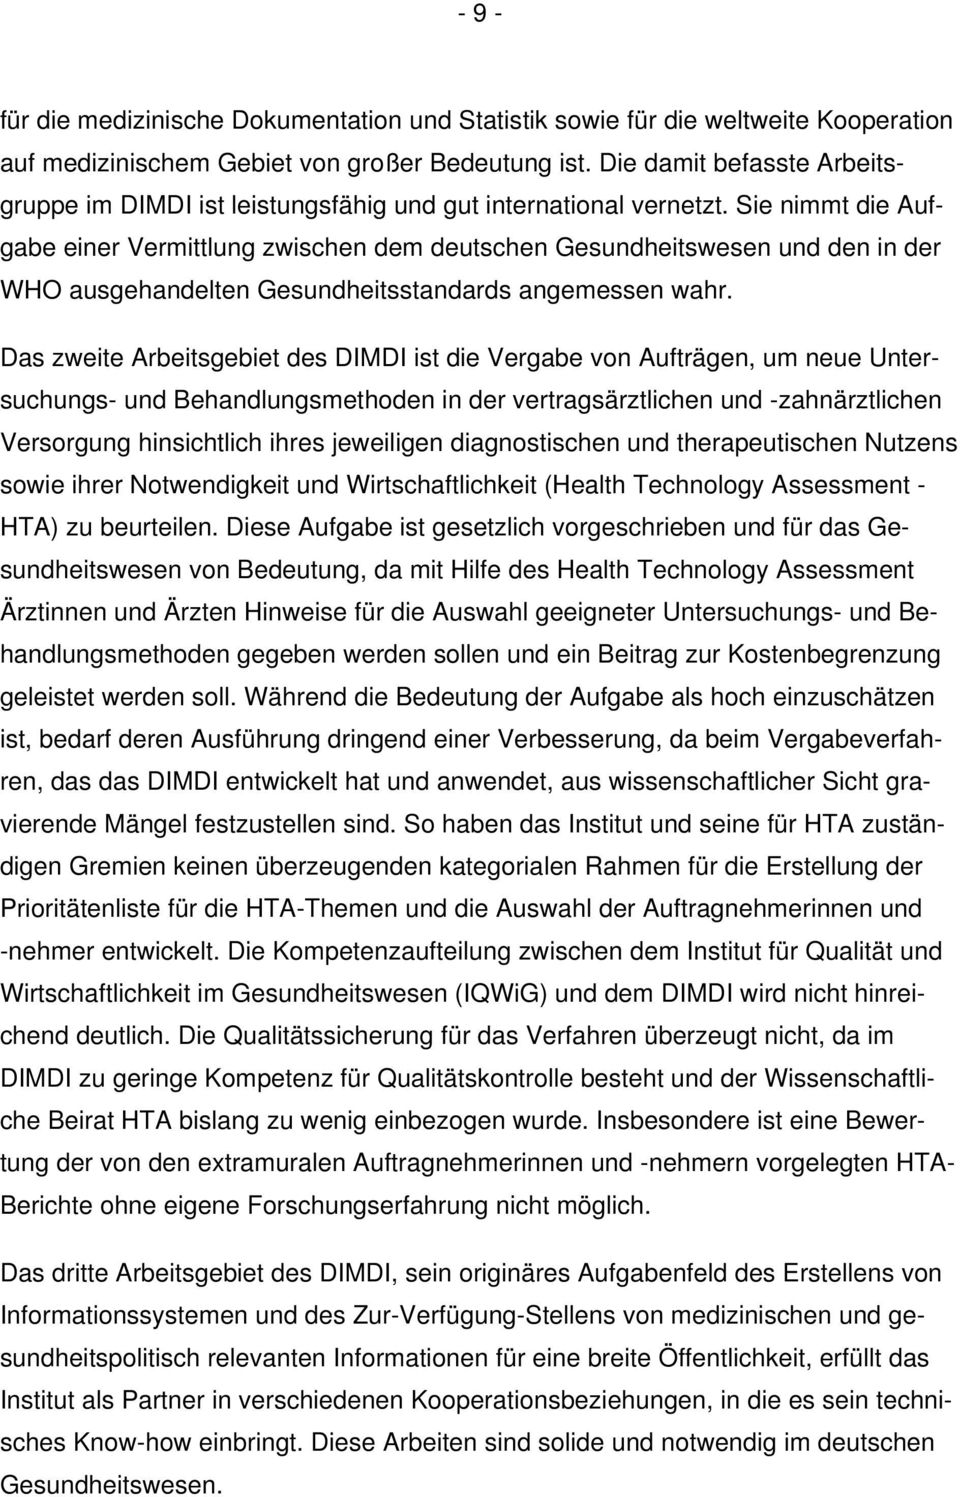 Sie nimmt die Aufgabe einer Vermittlung zwischen dem deutschen Gesundheitswesen und den in der WHO ausgehandelten Gesundheitsstandards angemessen wahr.